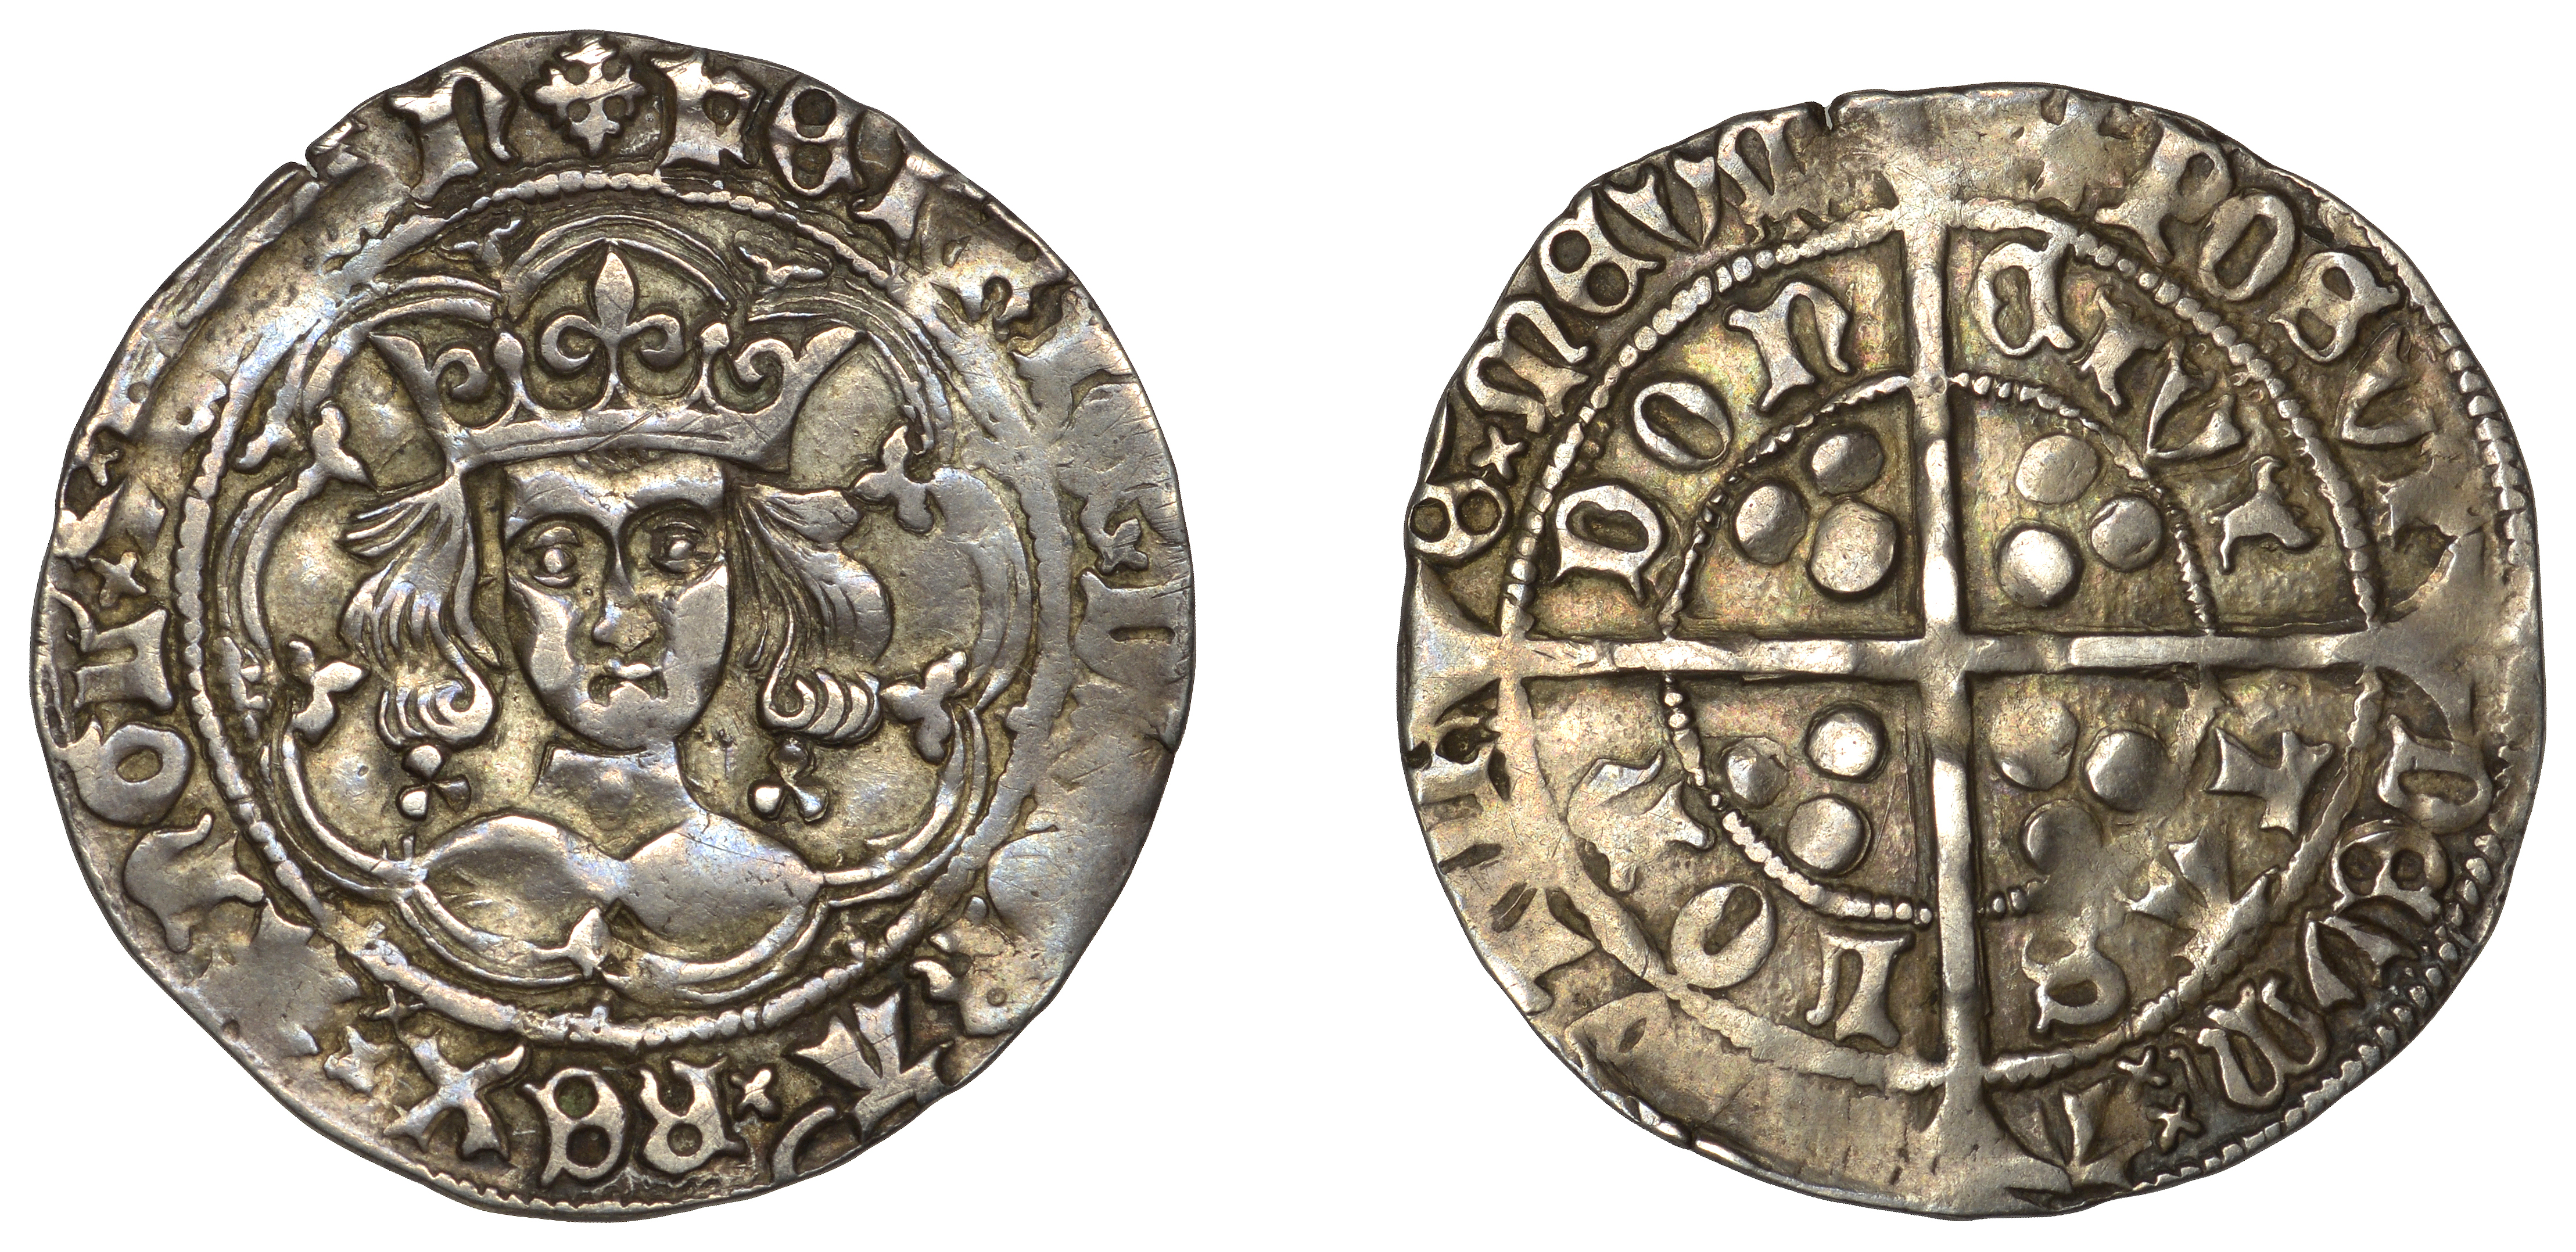 Henry VI (First reign, 1422-1461), Trefoil issue, Groat, class B, London, mm. crosses IIIb/V...